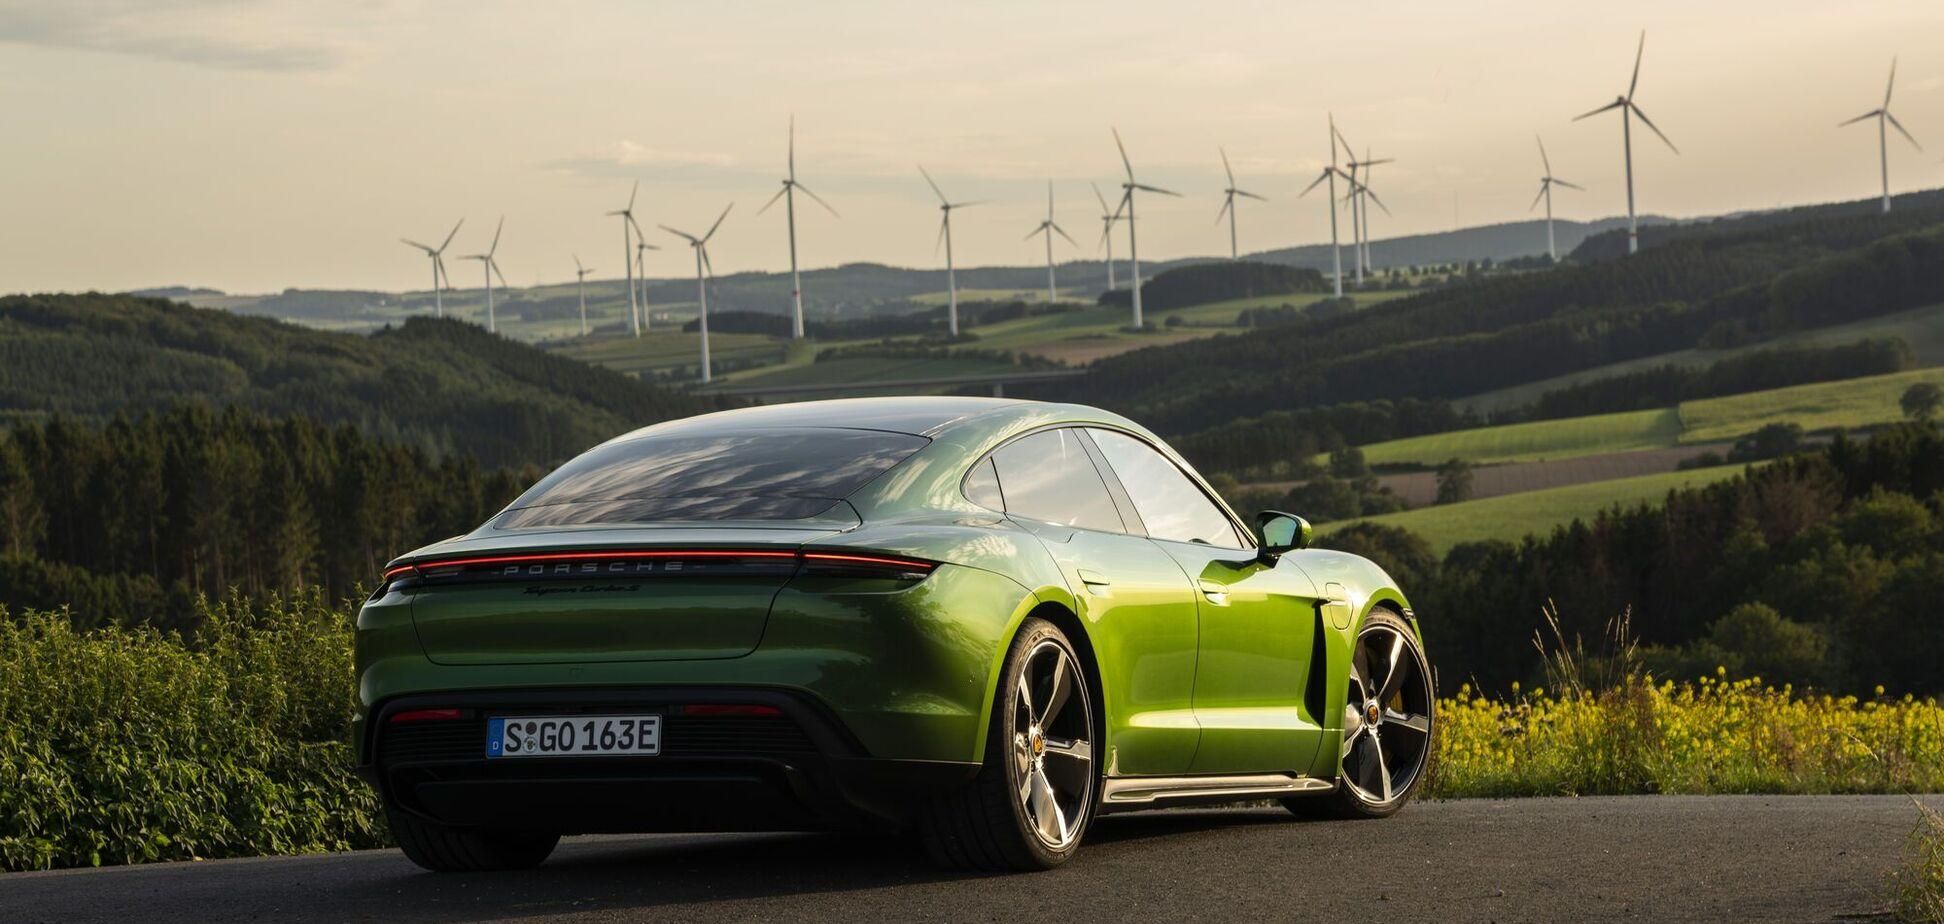 Экологически чистое топливо от Porsche: что известно, цена